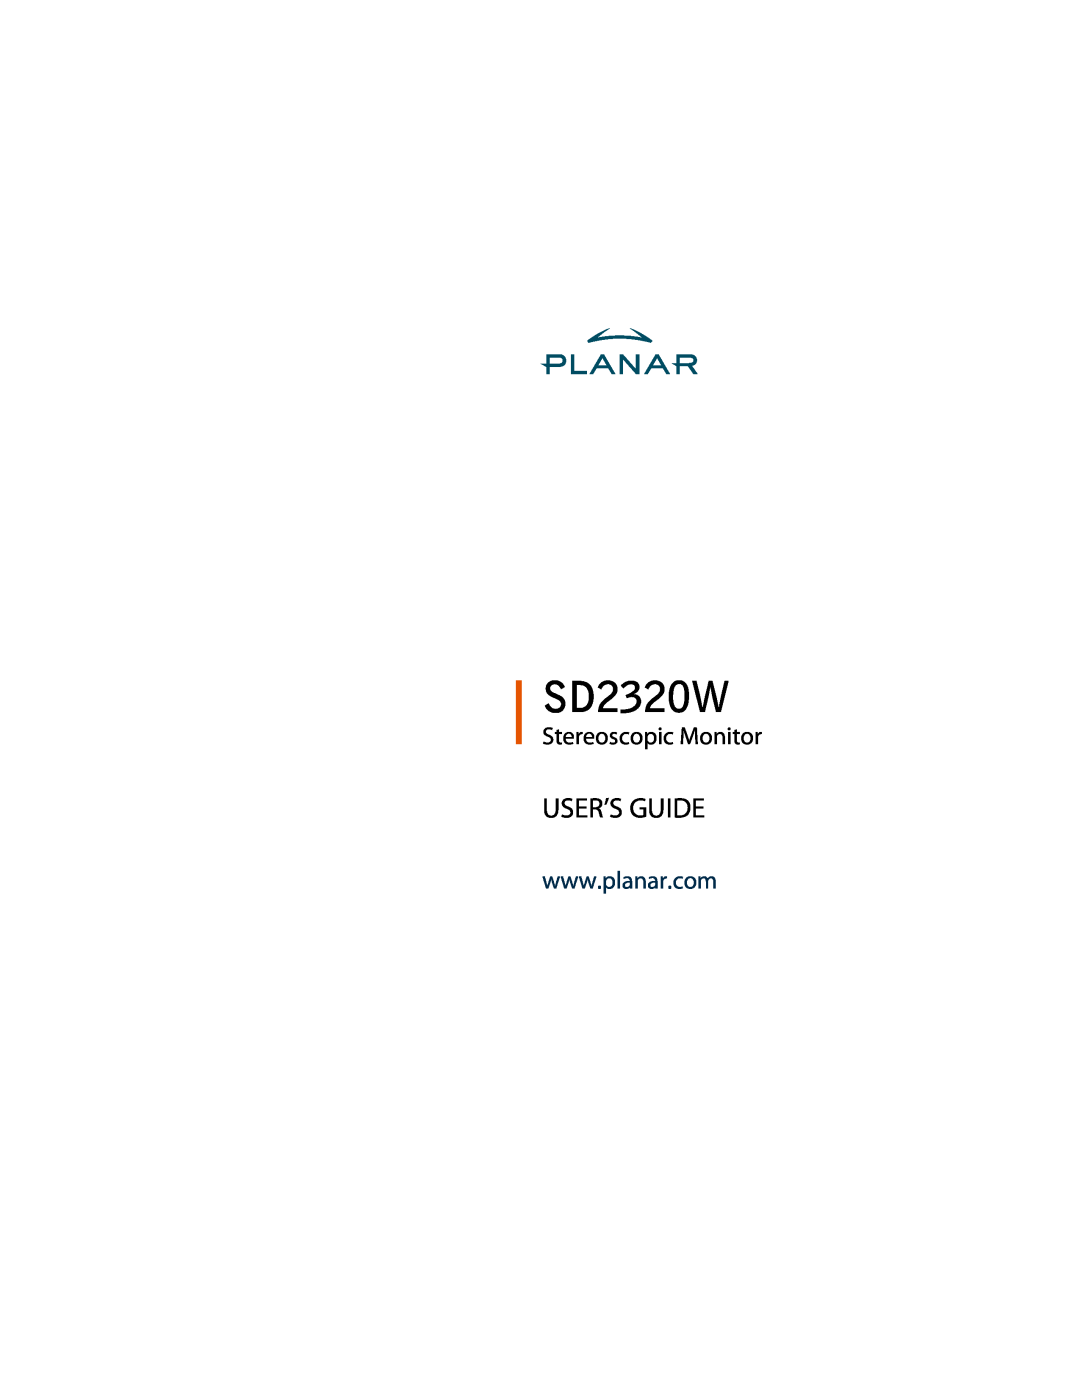 Planar SD2320W manual User’S Guide, Stereoscopic Monitor 